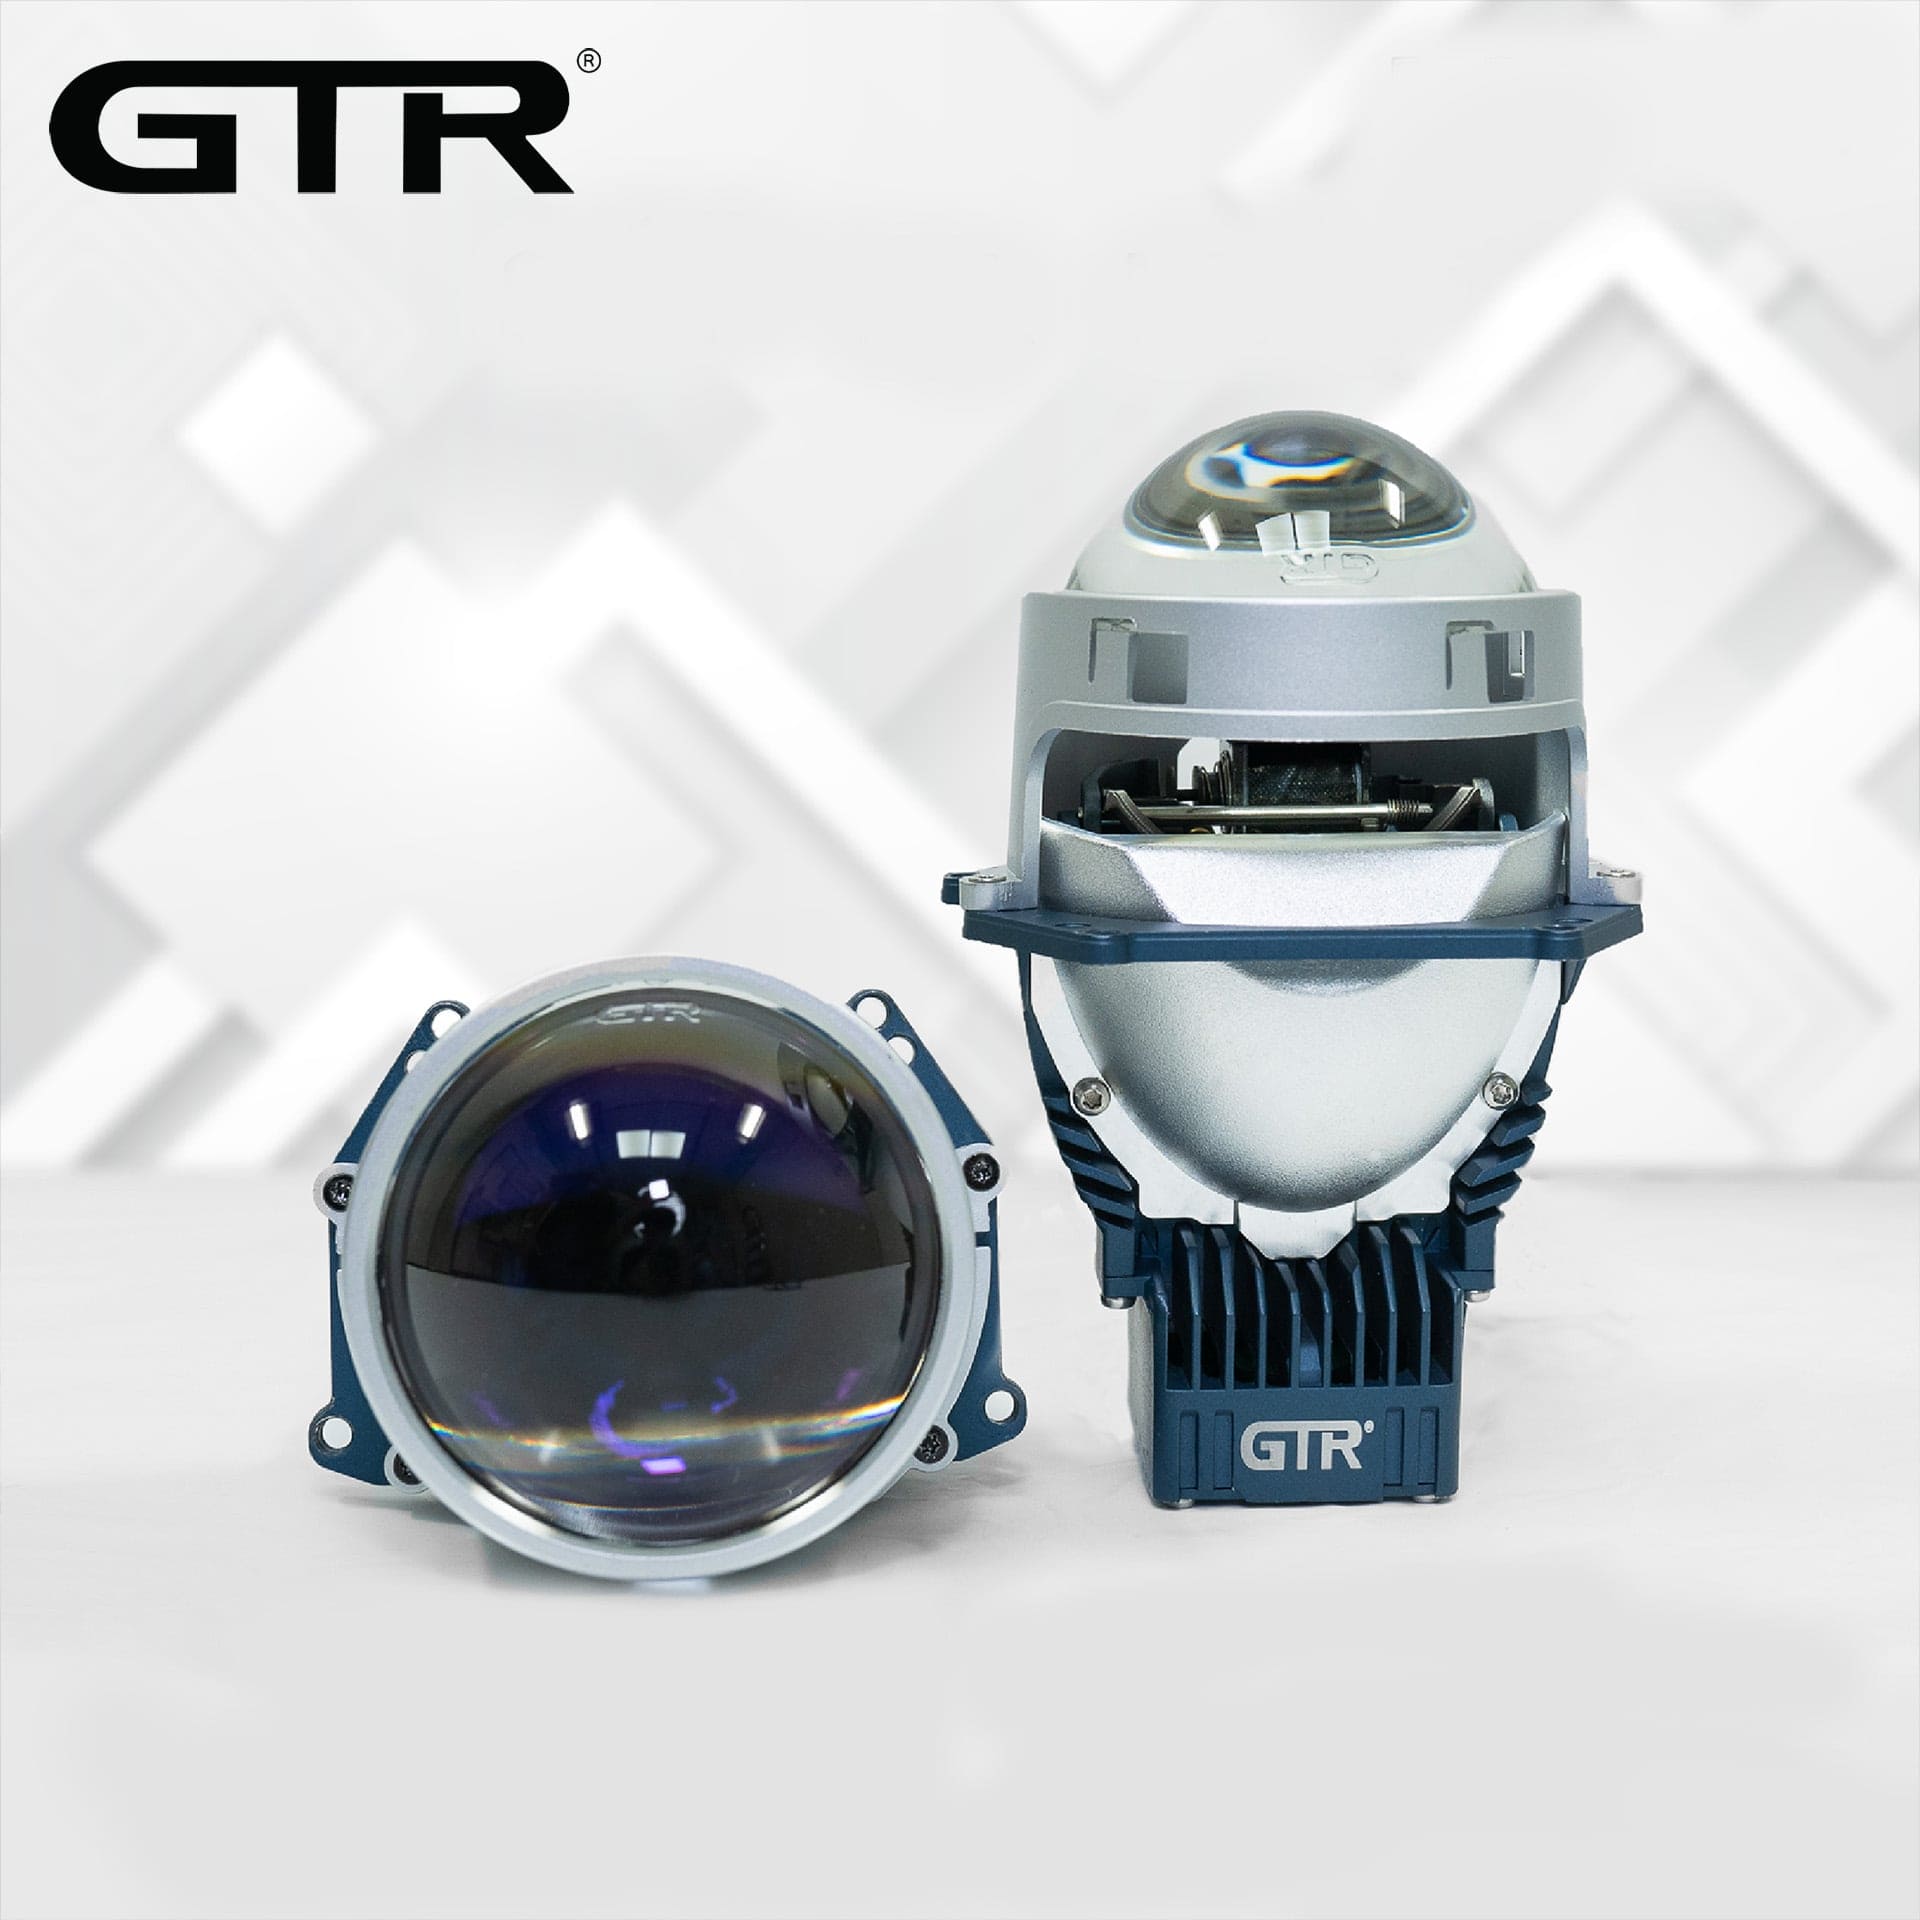 BI LED GTR PREMIUM 2.0 2021 NHIỆT MÀU 5500K